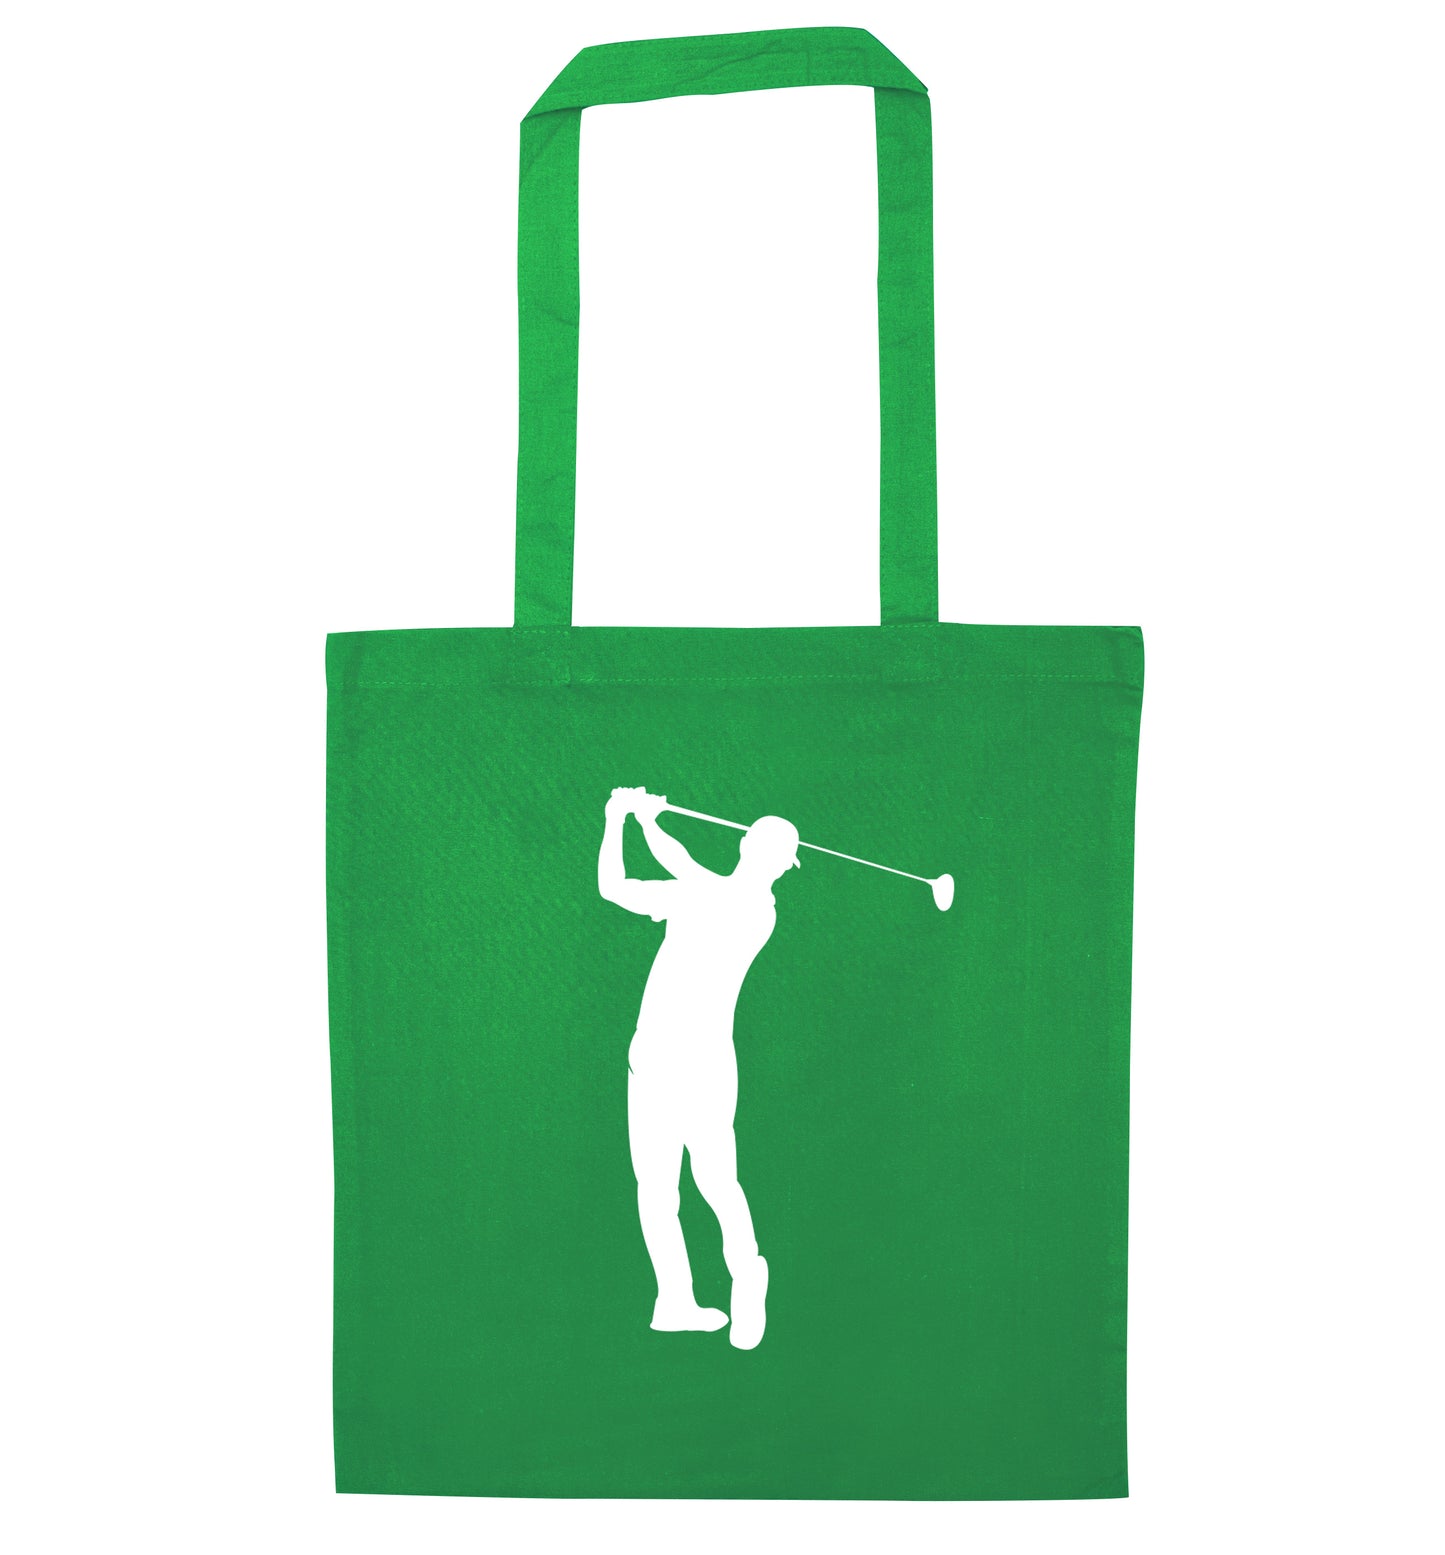 Golfer Illustration green tote bag